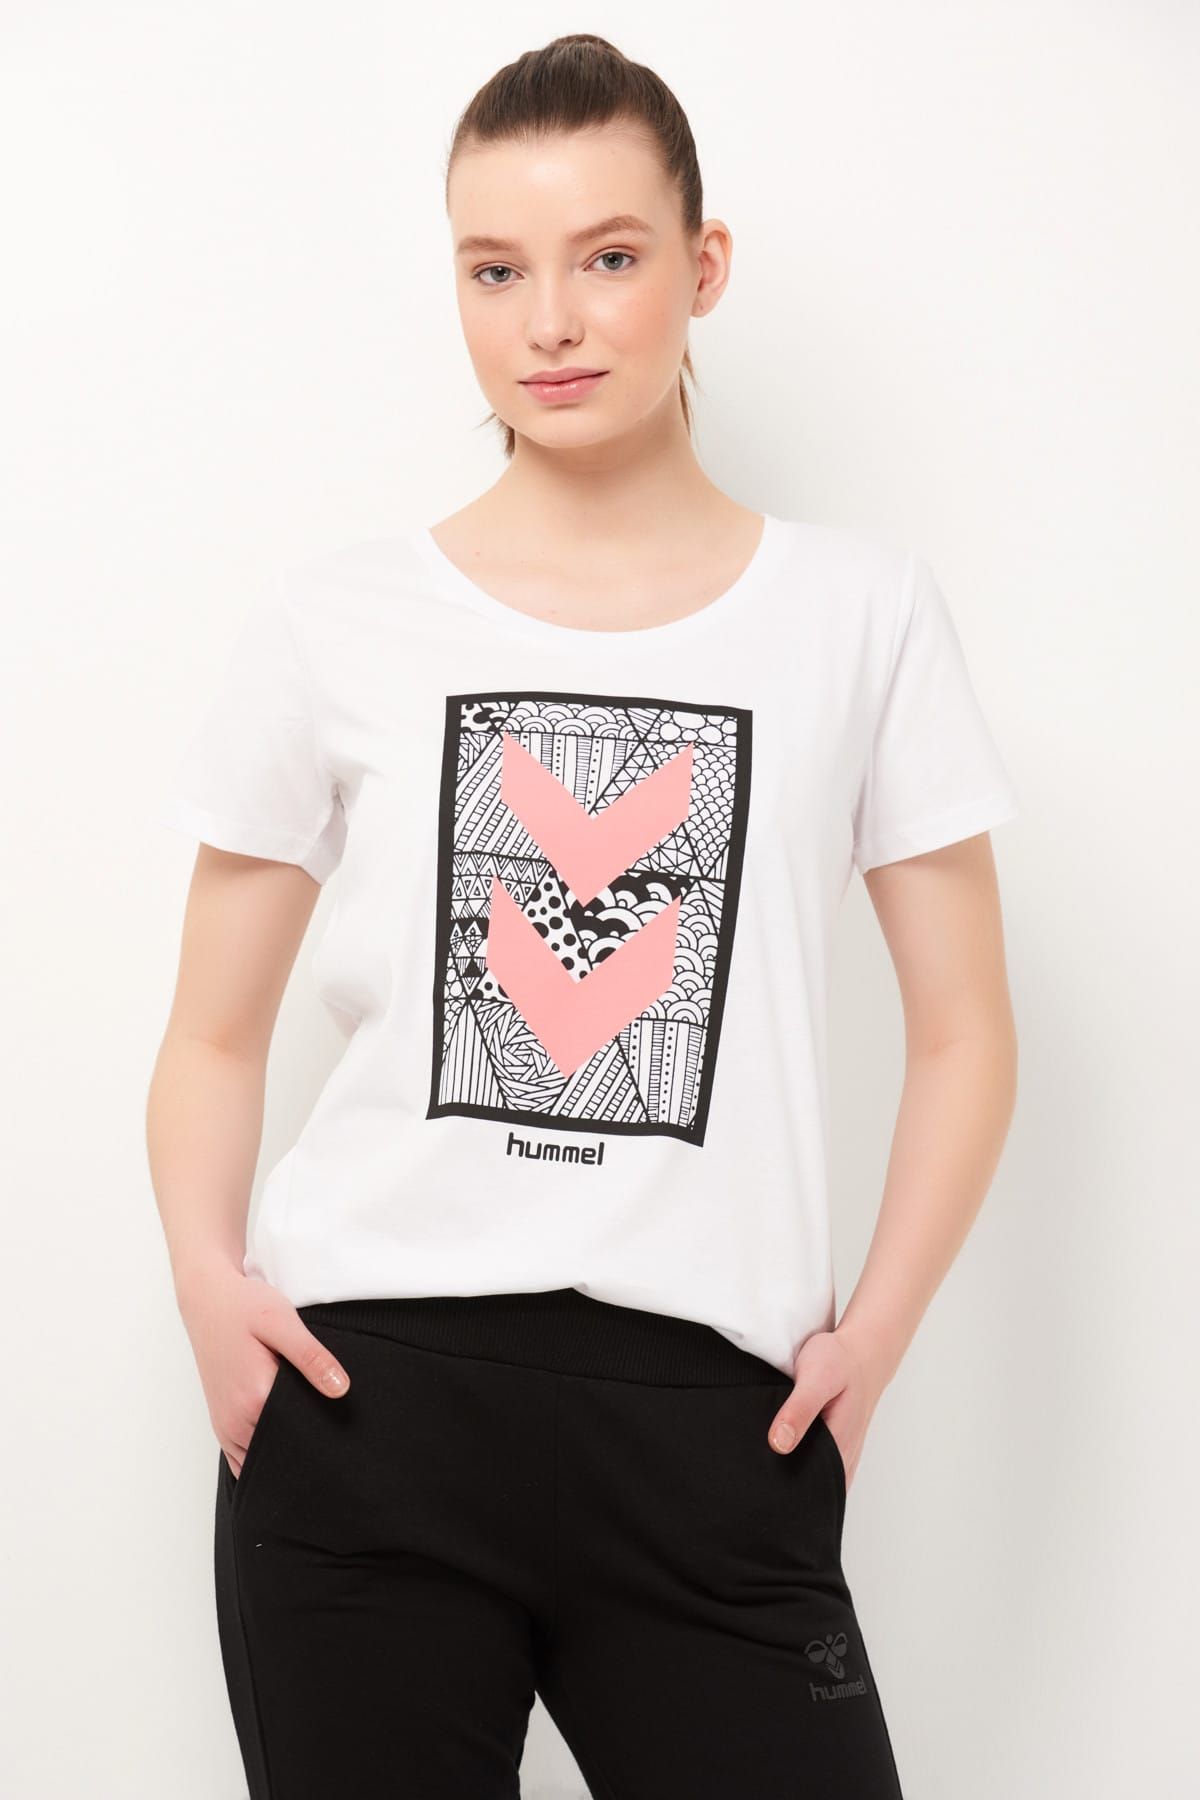 hummel Kadın T-Shirt - Hmlisla T-Shirt S/S